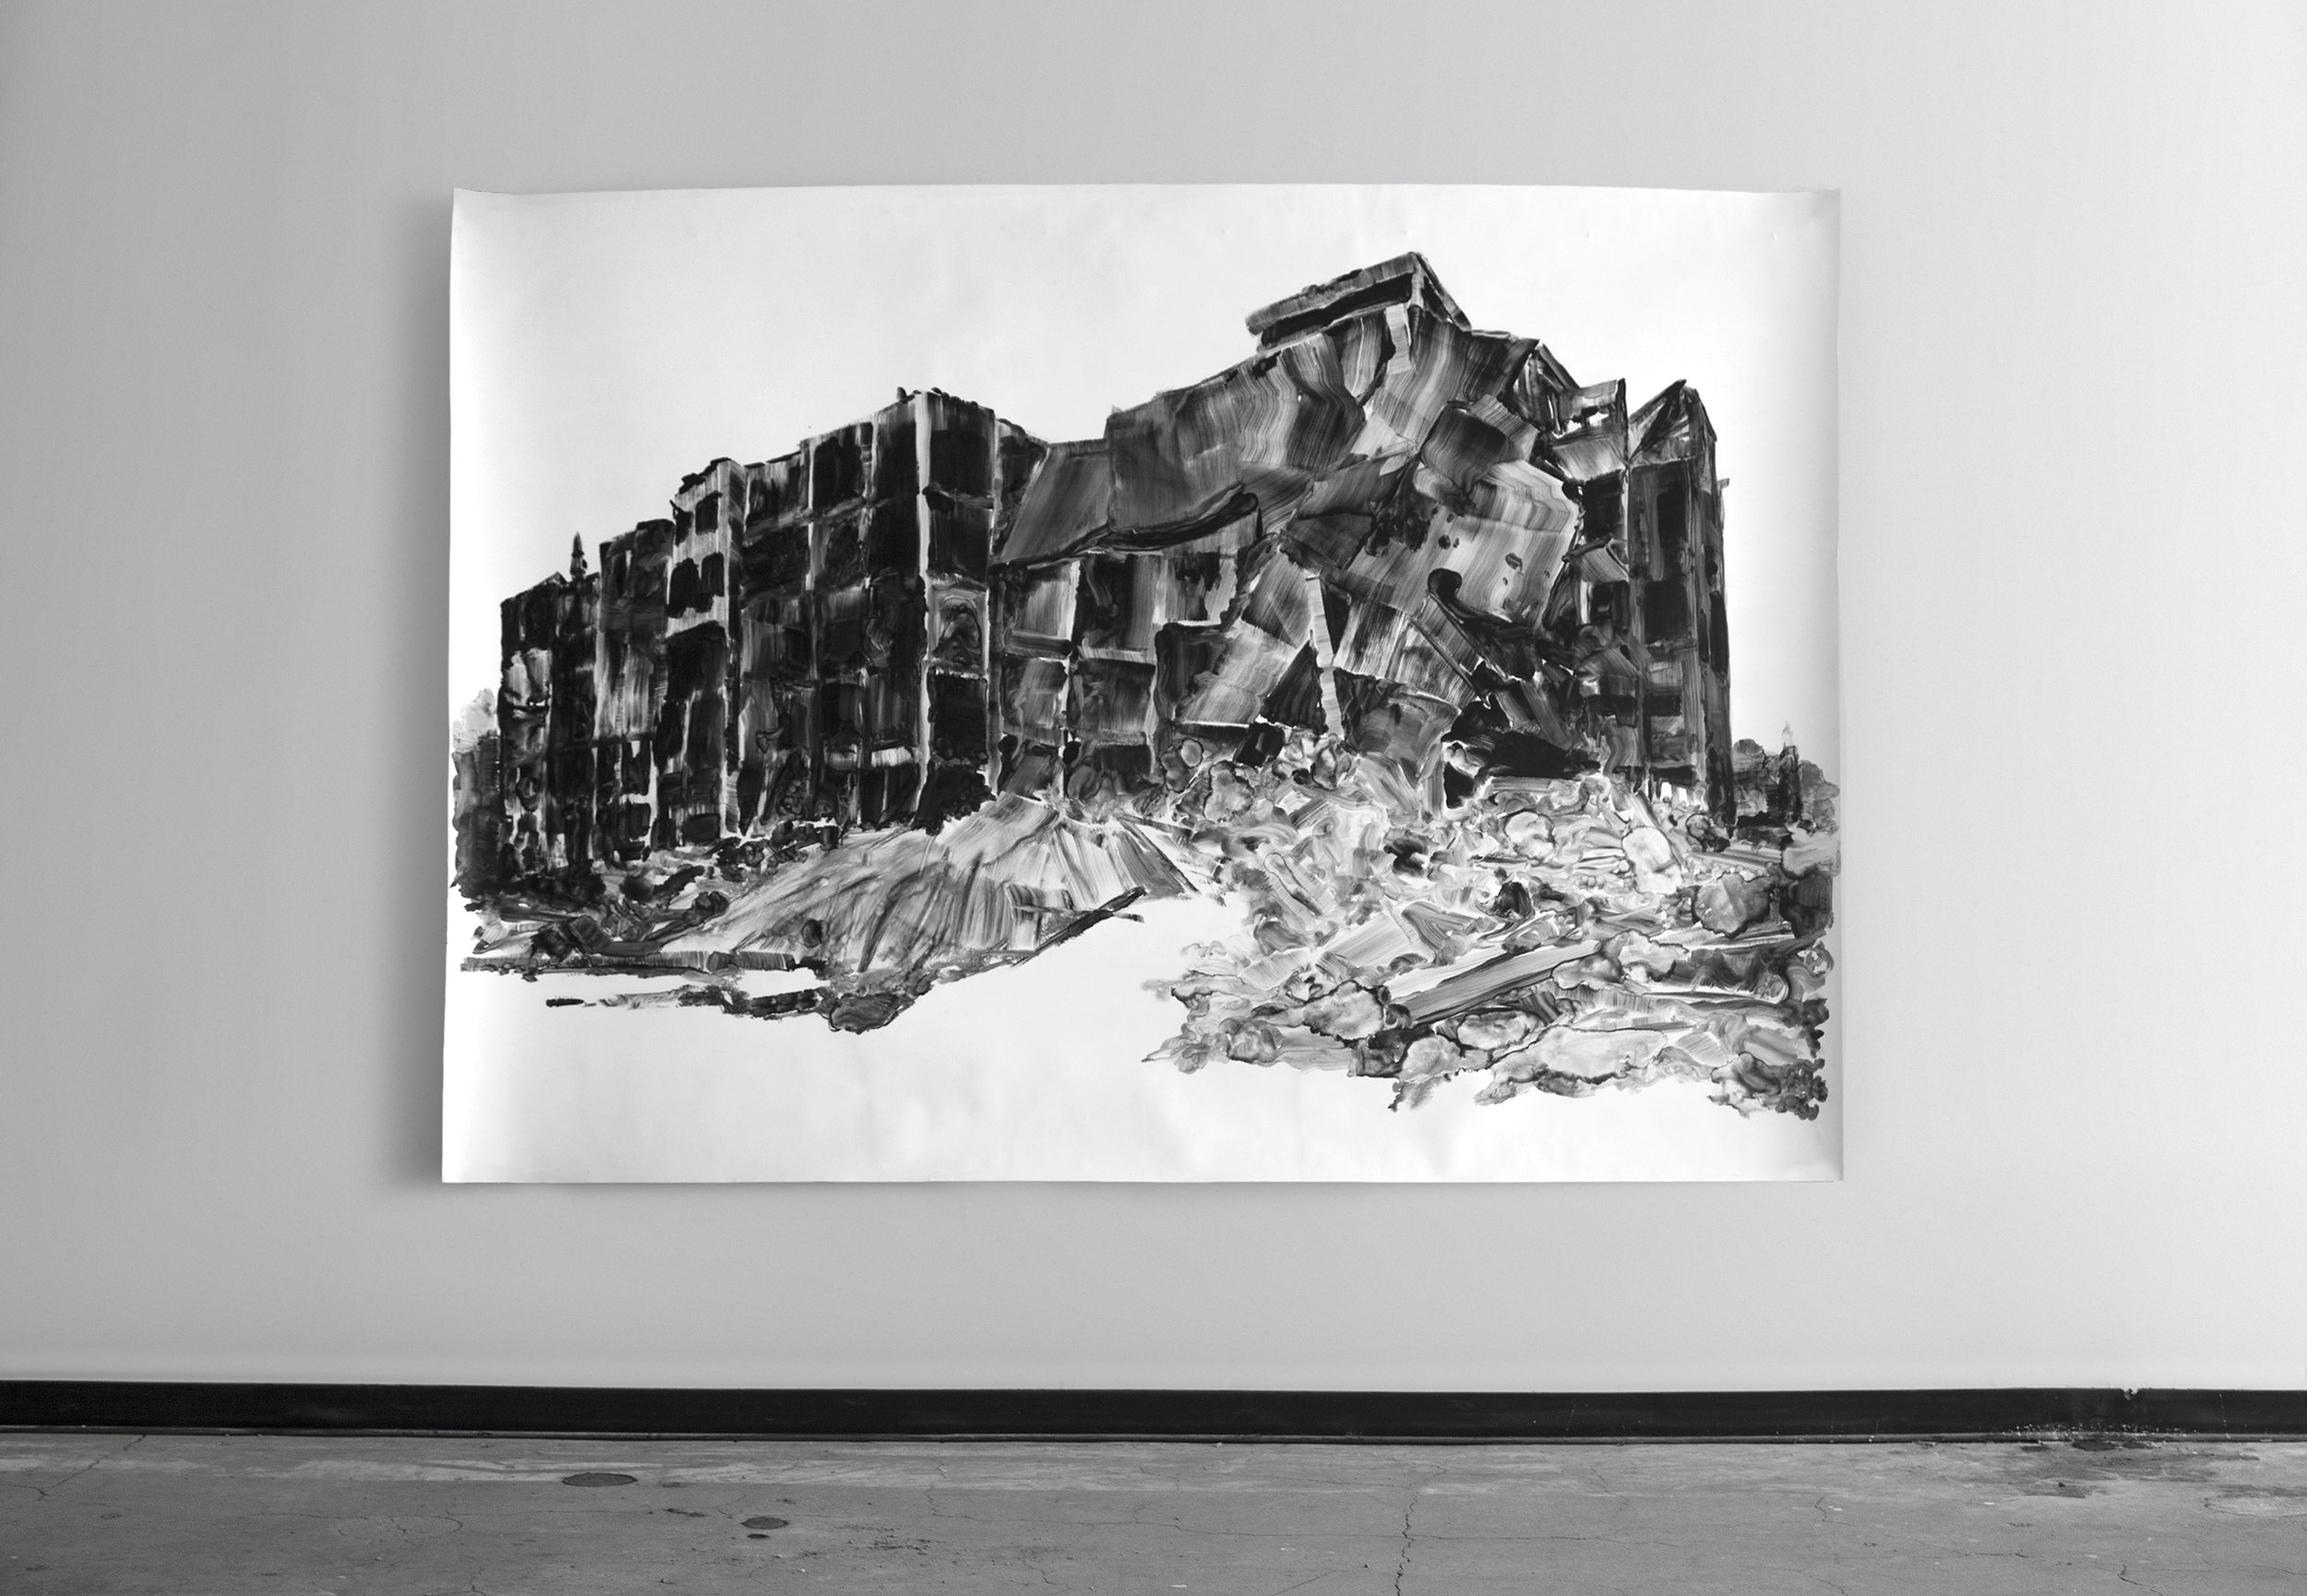  Un amas de ruines / A piles of ruins  Huile sur papier / Oil on paper  83 X 59 in / 210 X 150 cm  2016    